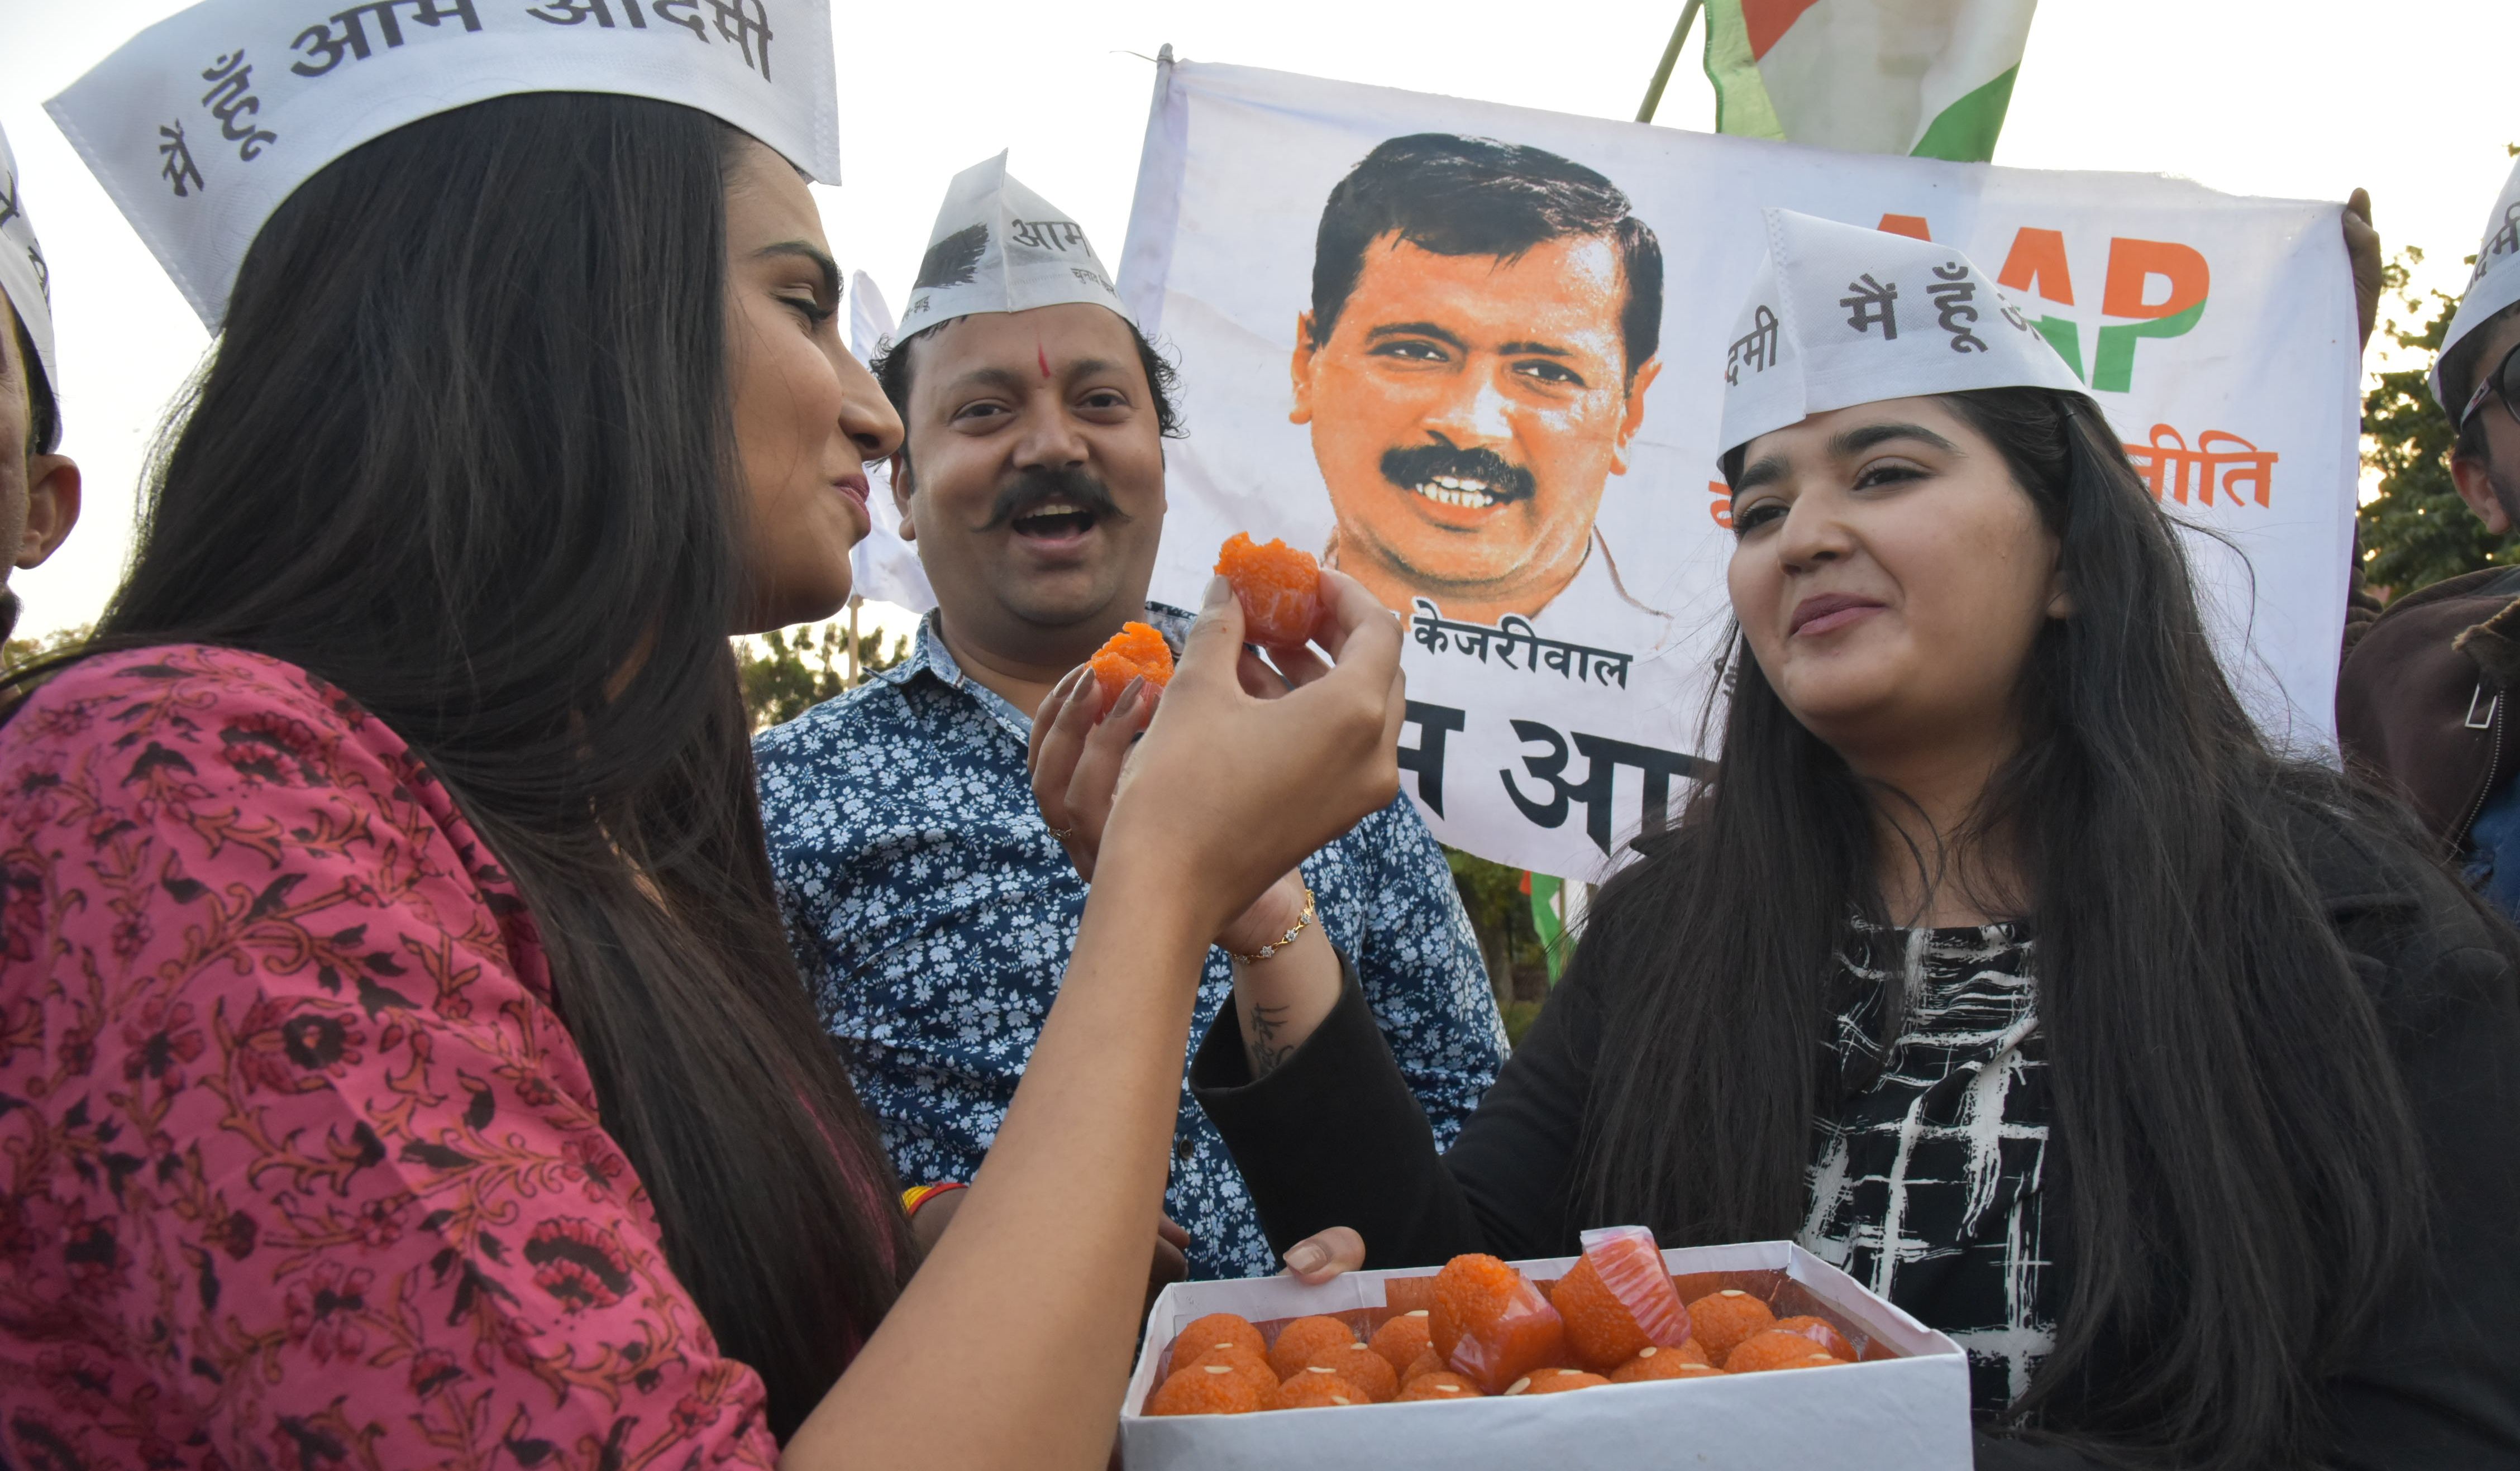 दिल्ली विधानसभा चुनाव में ‘आप’ की विजय पर जयपुर में पार्टी के कार्यकर्ताओं ने
मनाया जश्न